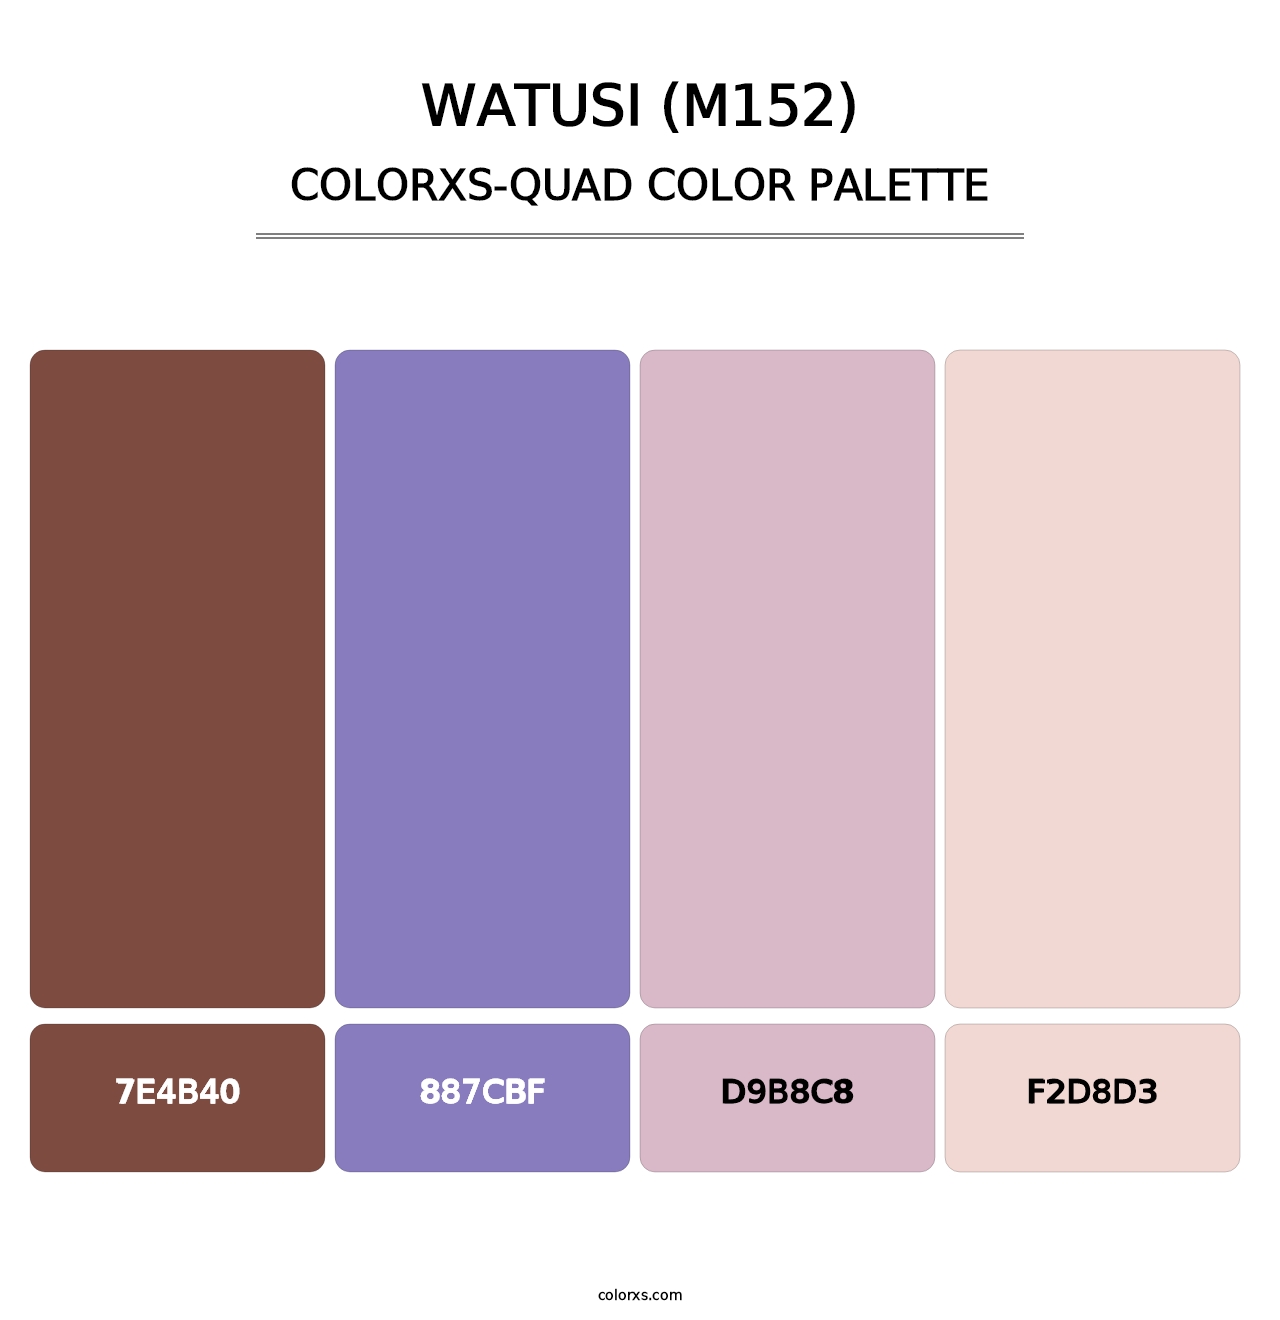 Watusi (M152) - Colorxs Quad Palette